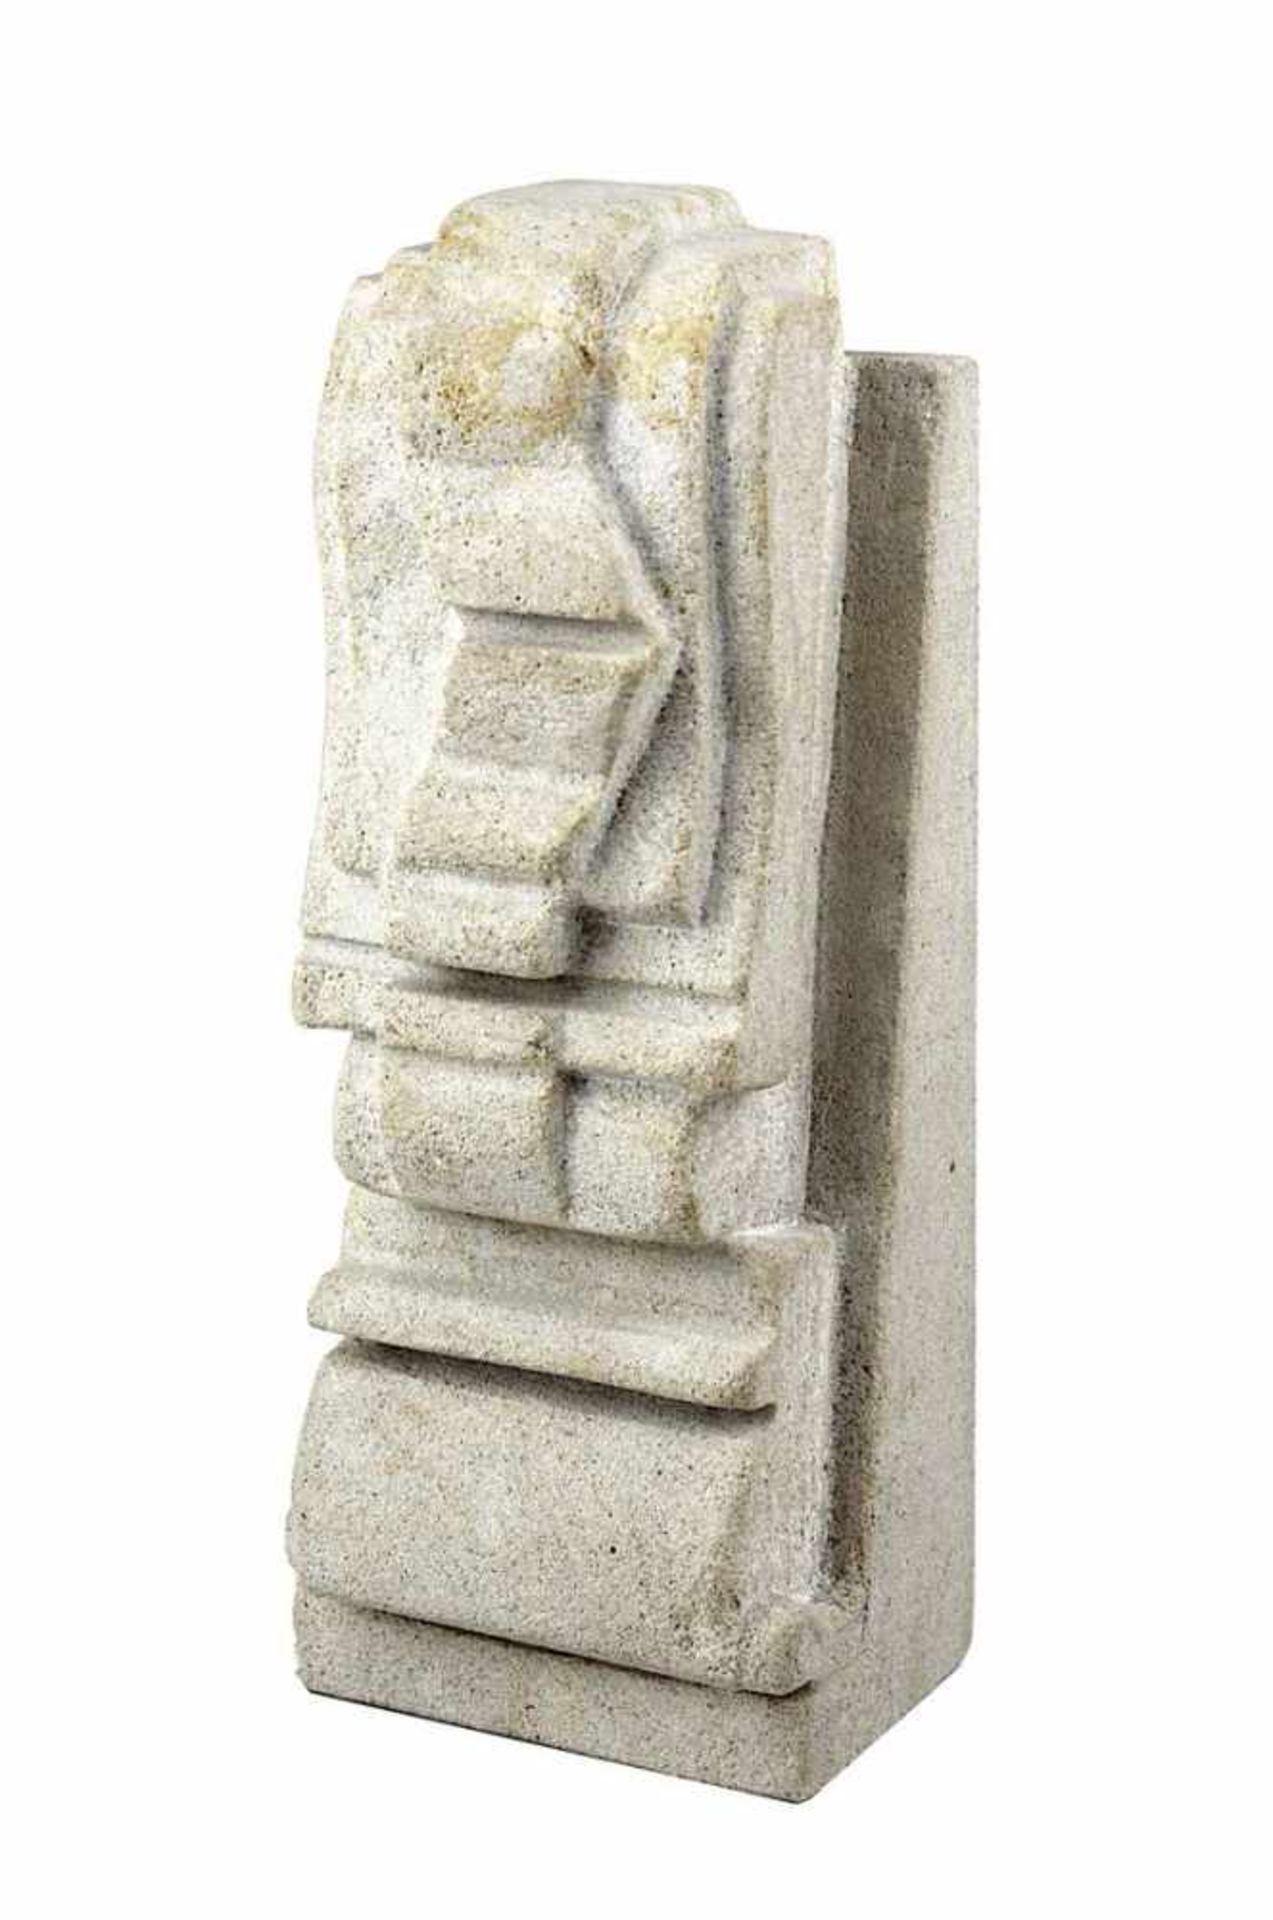 Künstler 2. Hälfte 20. Jh., Ohne Titel Skulptur aus Sandstein, Höhe 17,8 cm, Tiefe 5,5 cm. 1626-